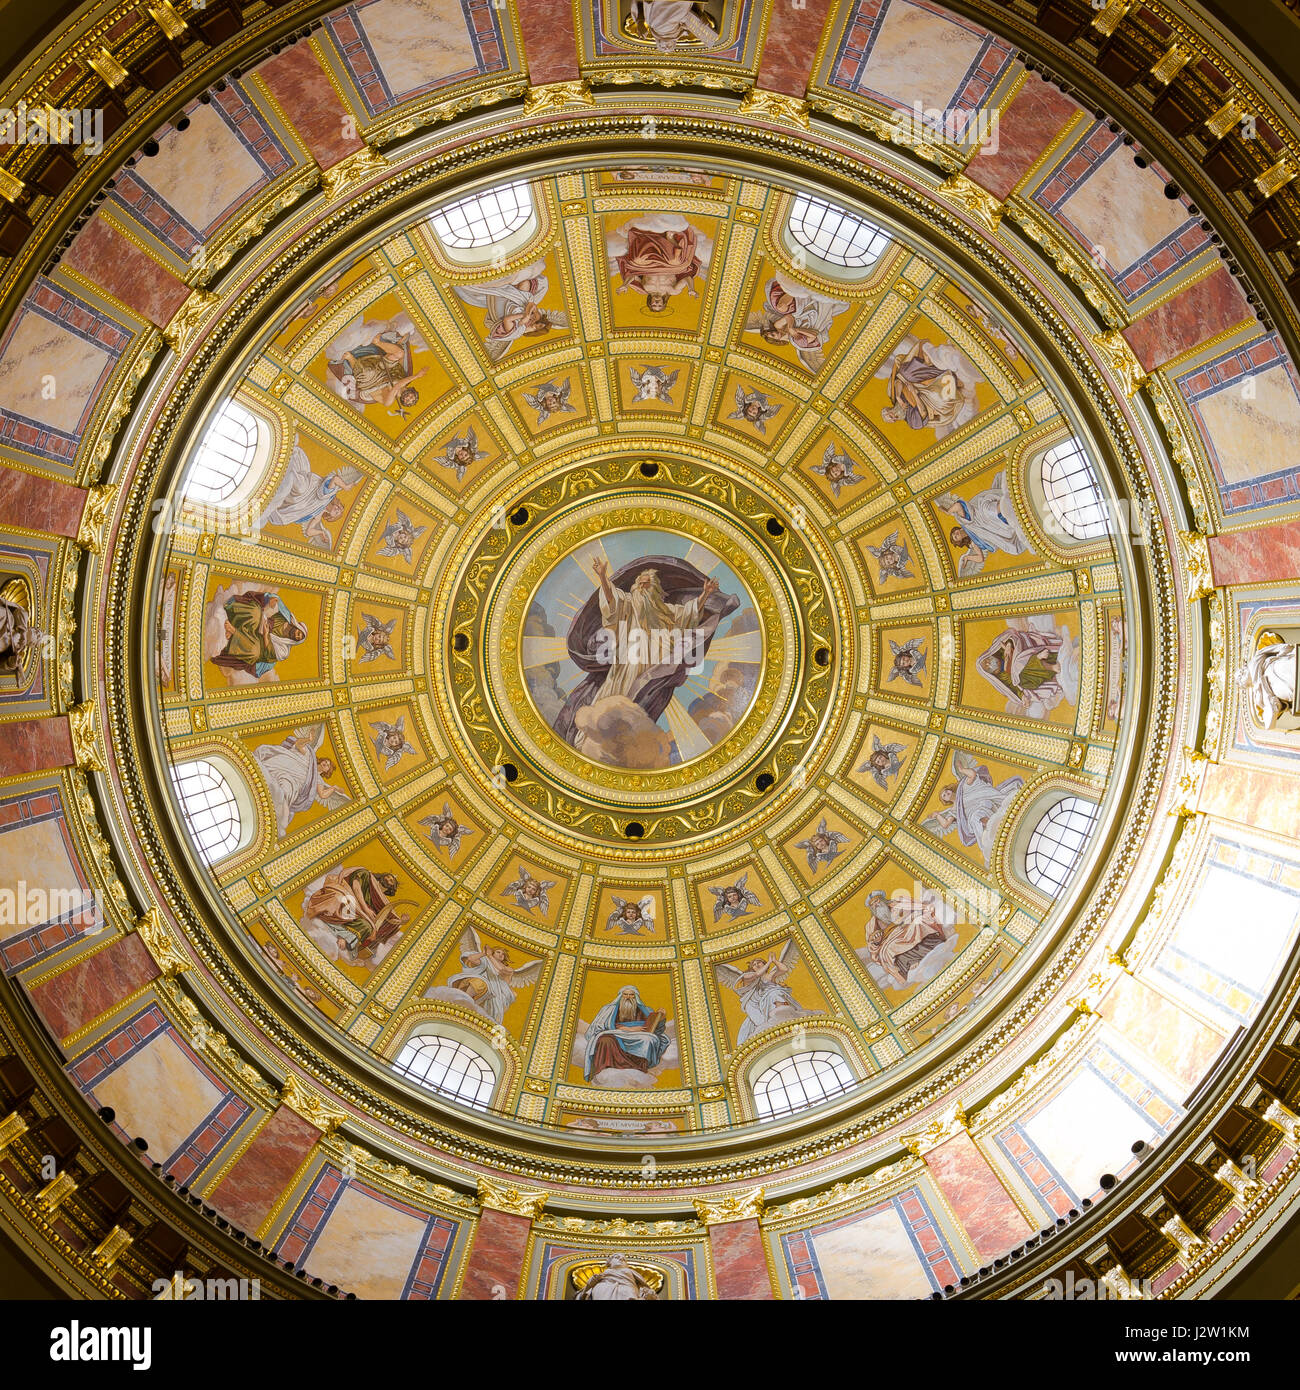 BUDAPEST, Ungarn - 22. Februar 2016: Innere der Kuppel. Römisch-katholische Kirche St.-Stephans Basilika. Reich verzierte Decke mit Wandmalerei und g Stockfoto